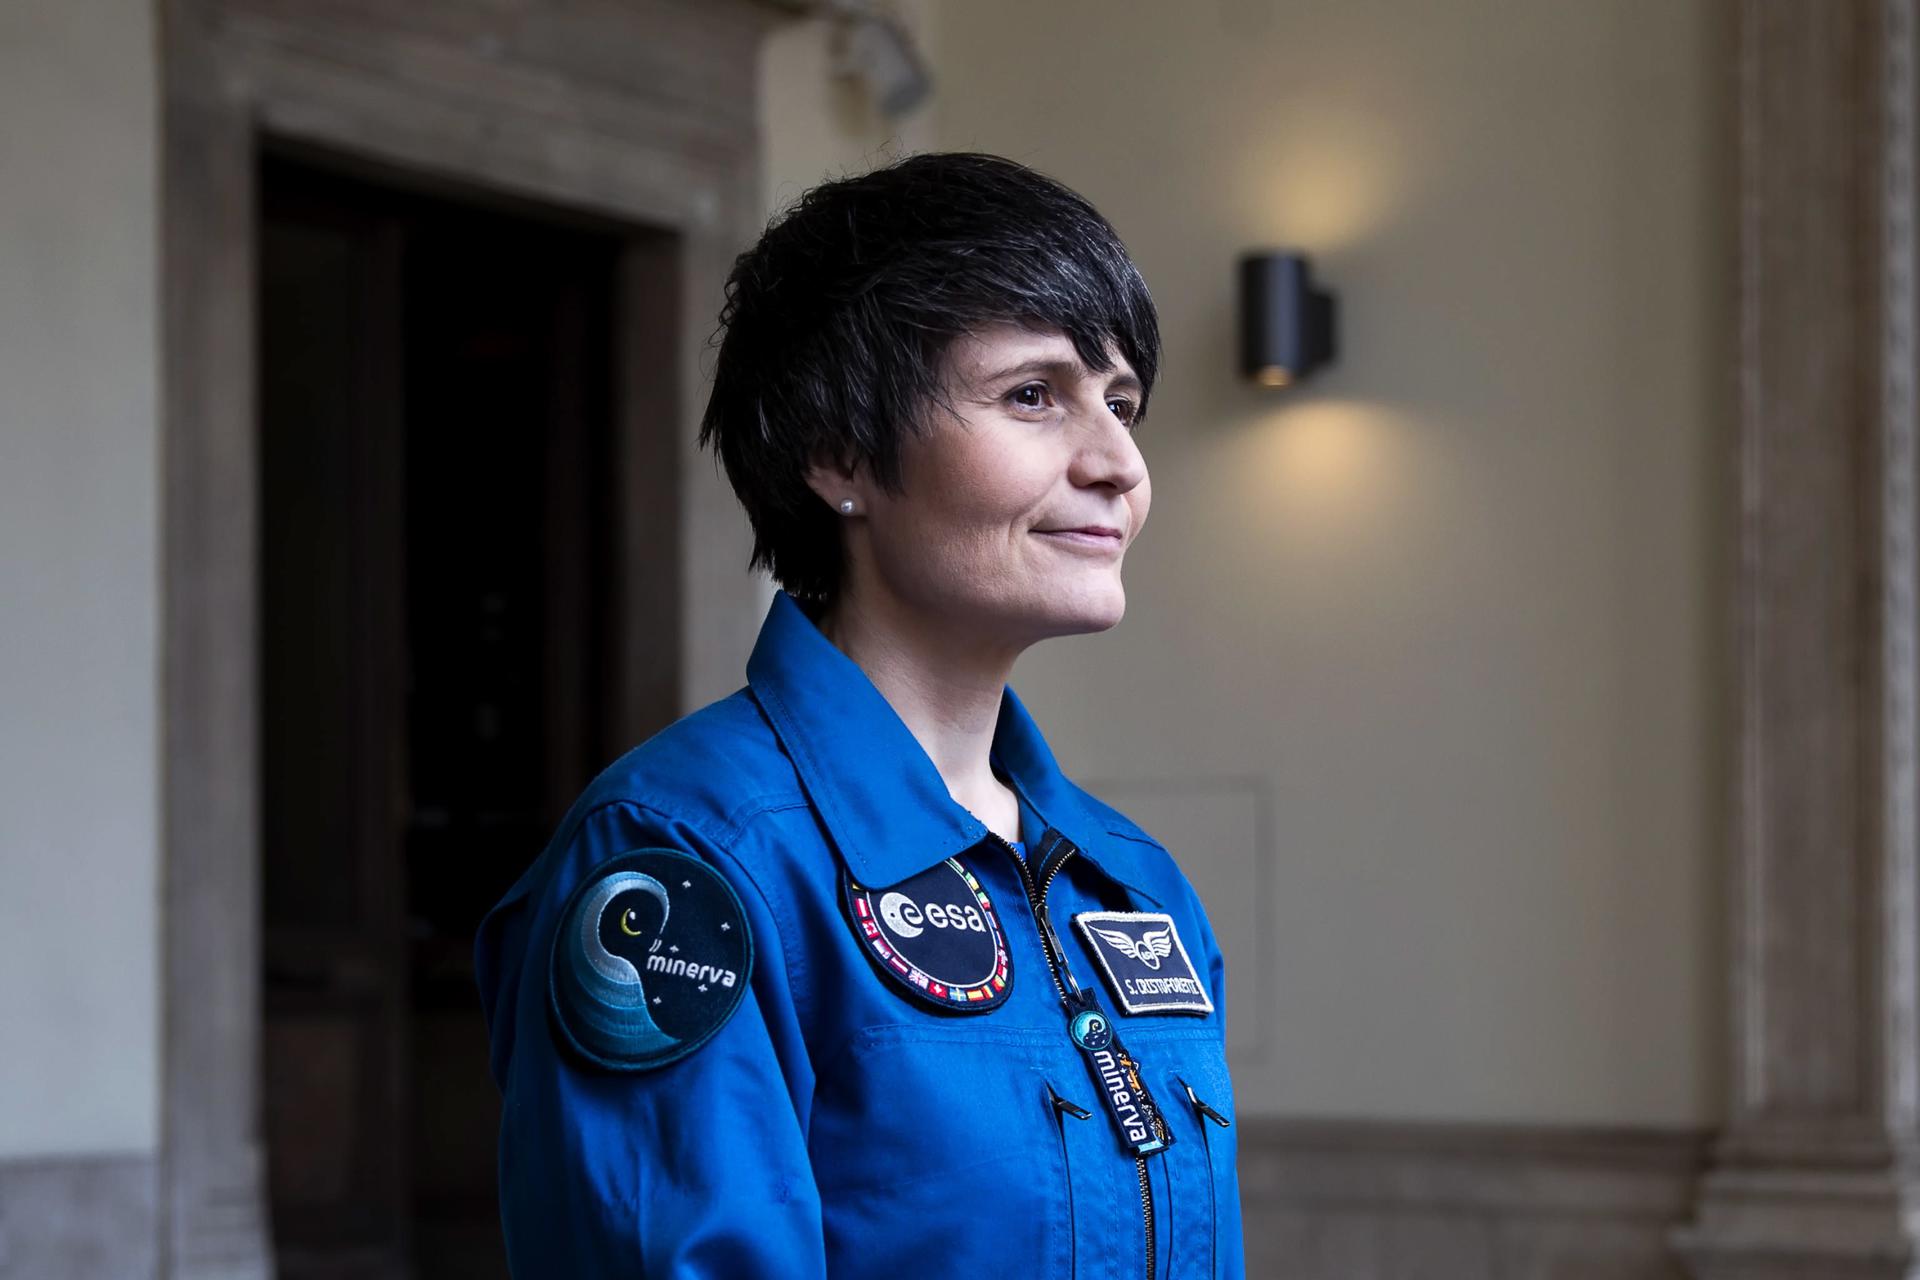 La única mujer astronauta en activo no quiere inspirar solamente a las niñas